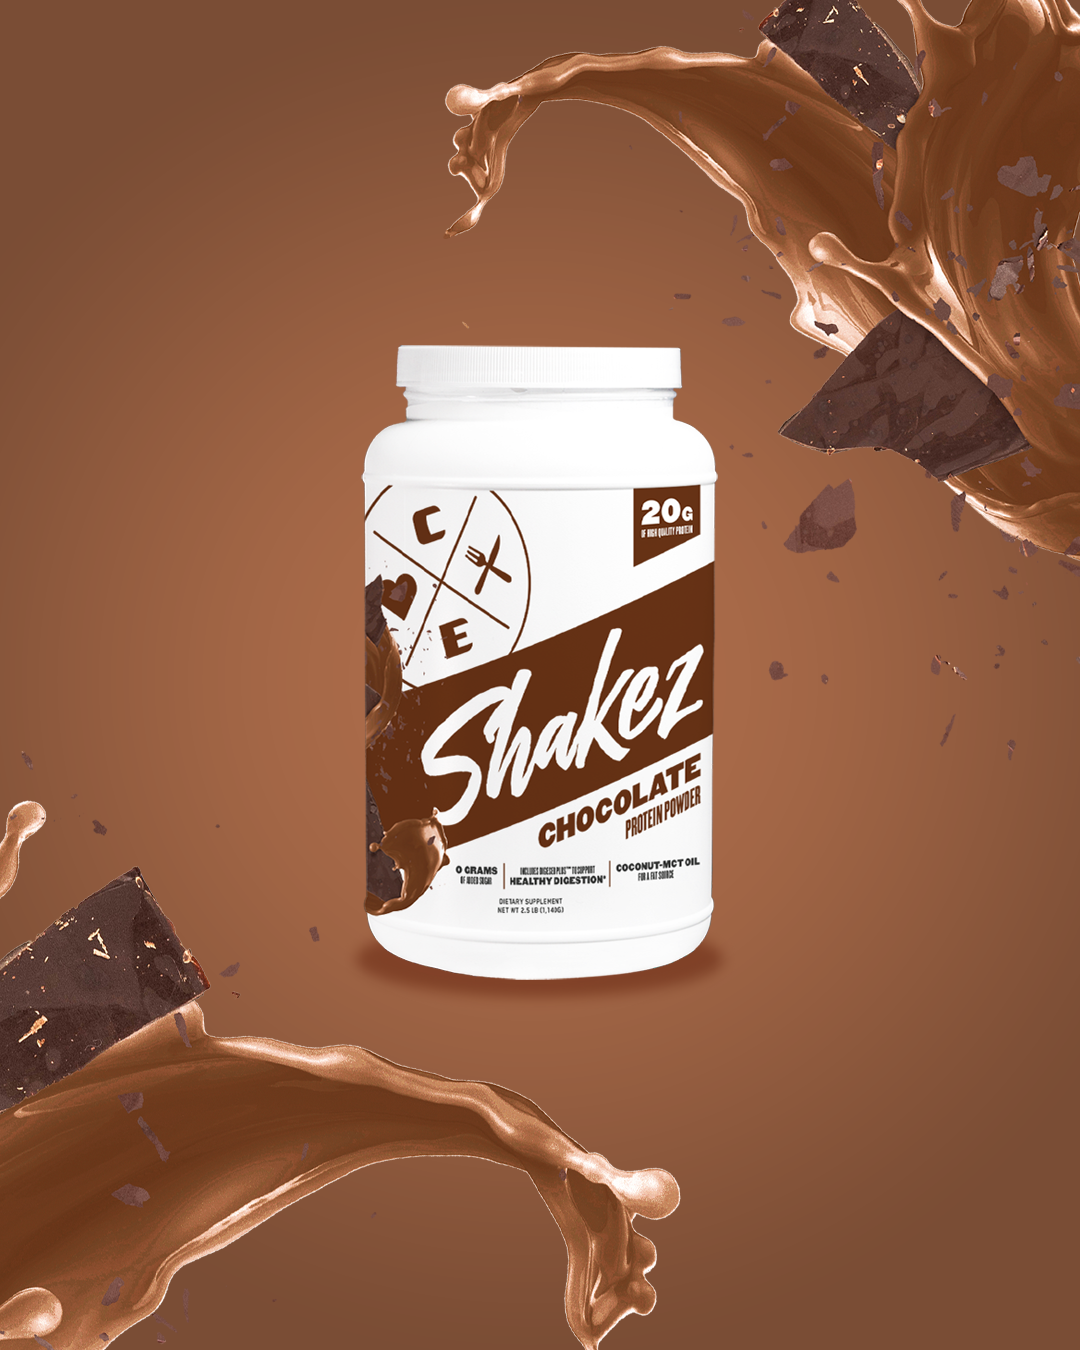 Clean Eatz Kitchen Chocolate Protein Powder Weight Loss Shakes